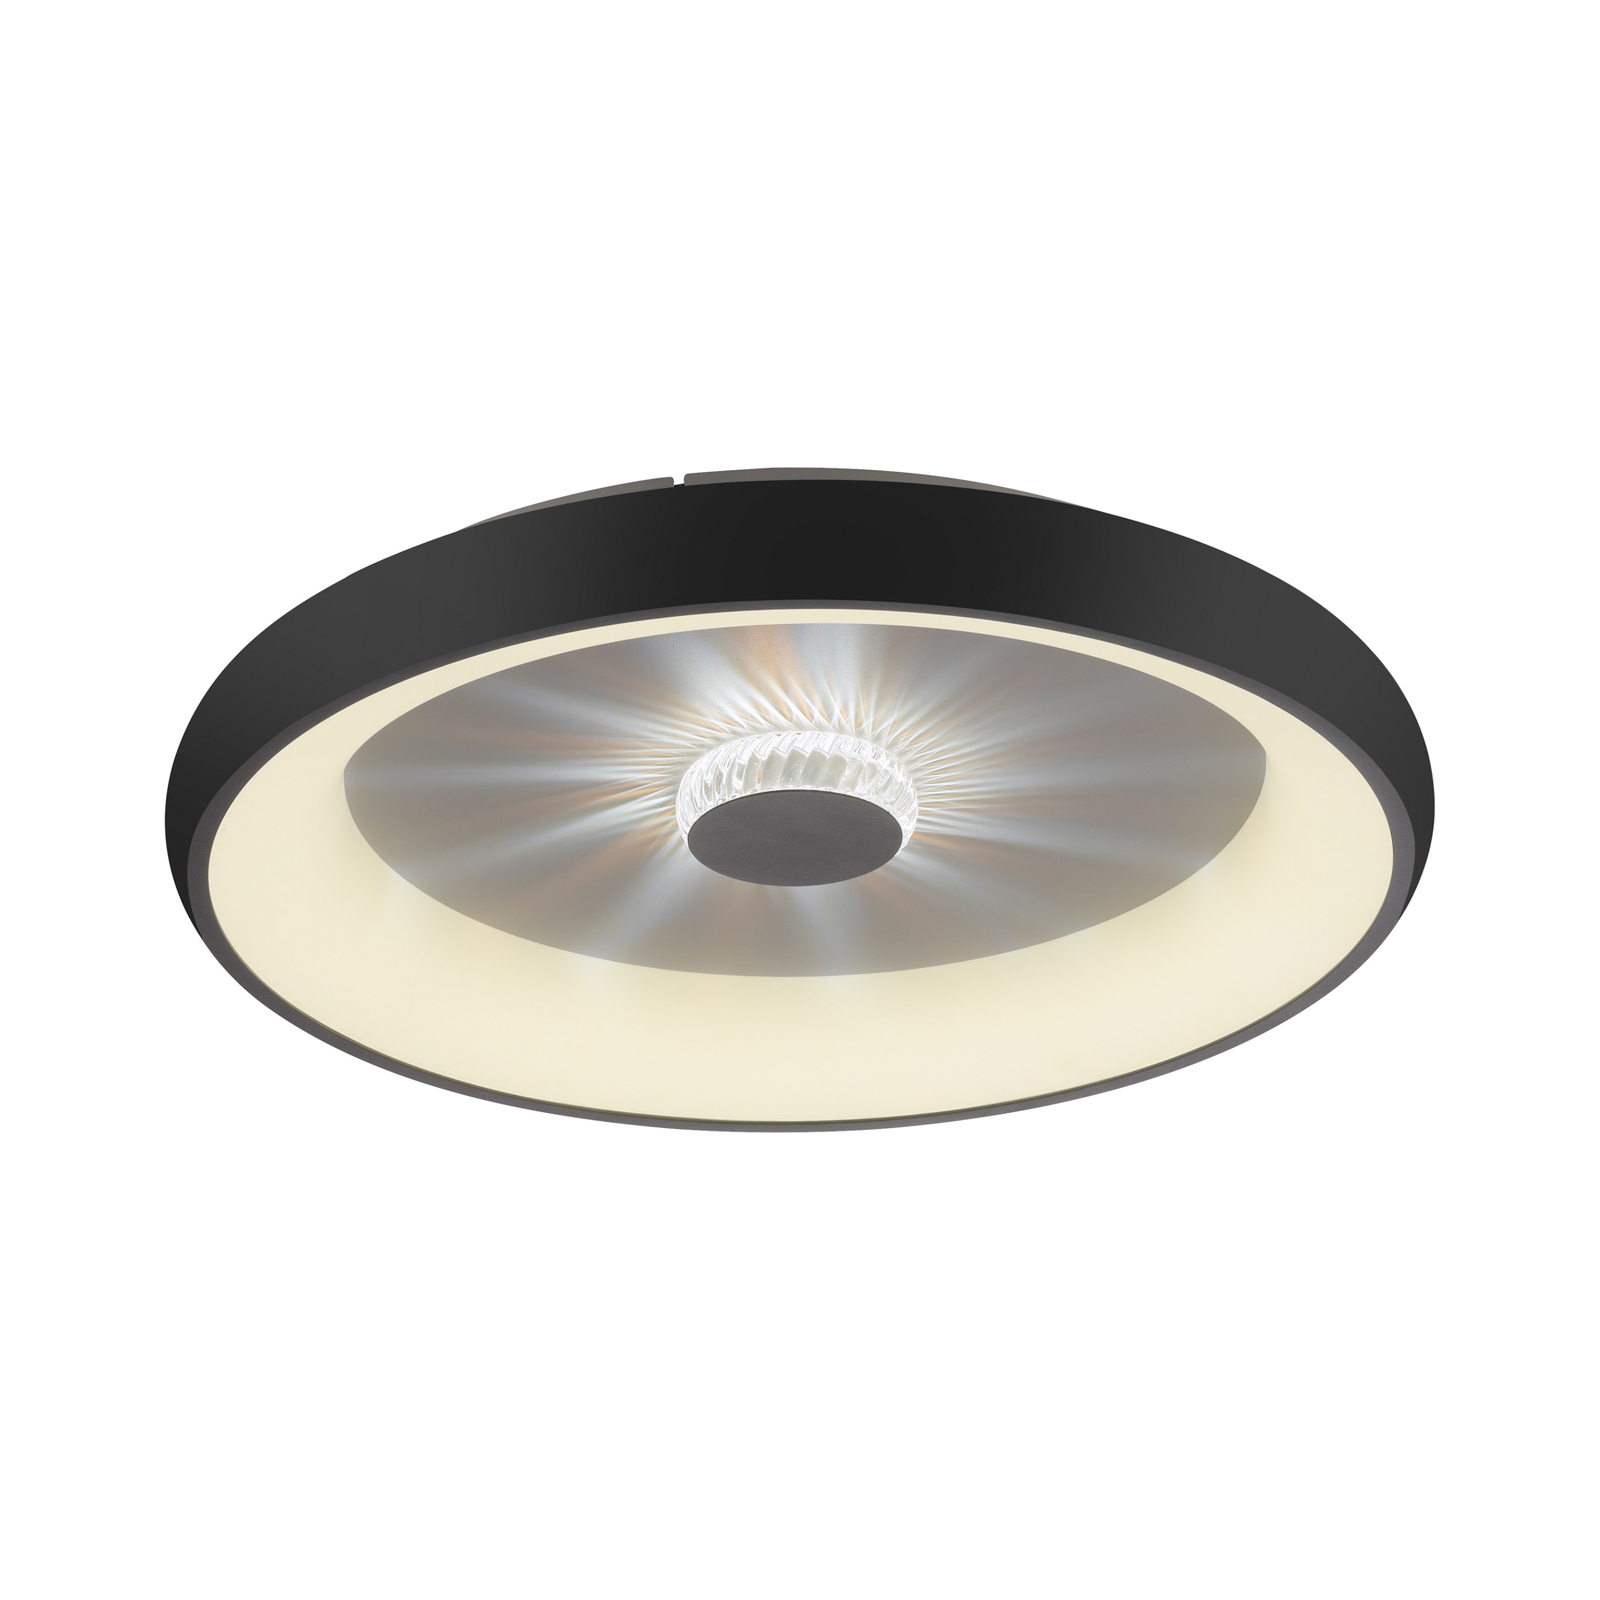 Stropné svietidlo Vertigo LED, CCT, Ø 61,5 cm, čierne